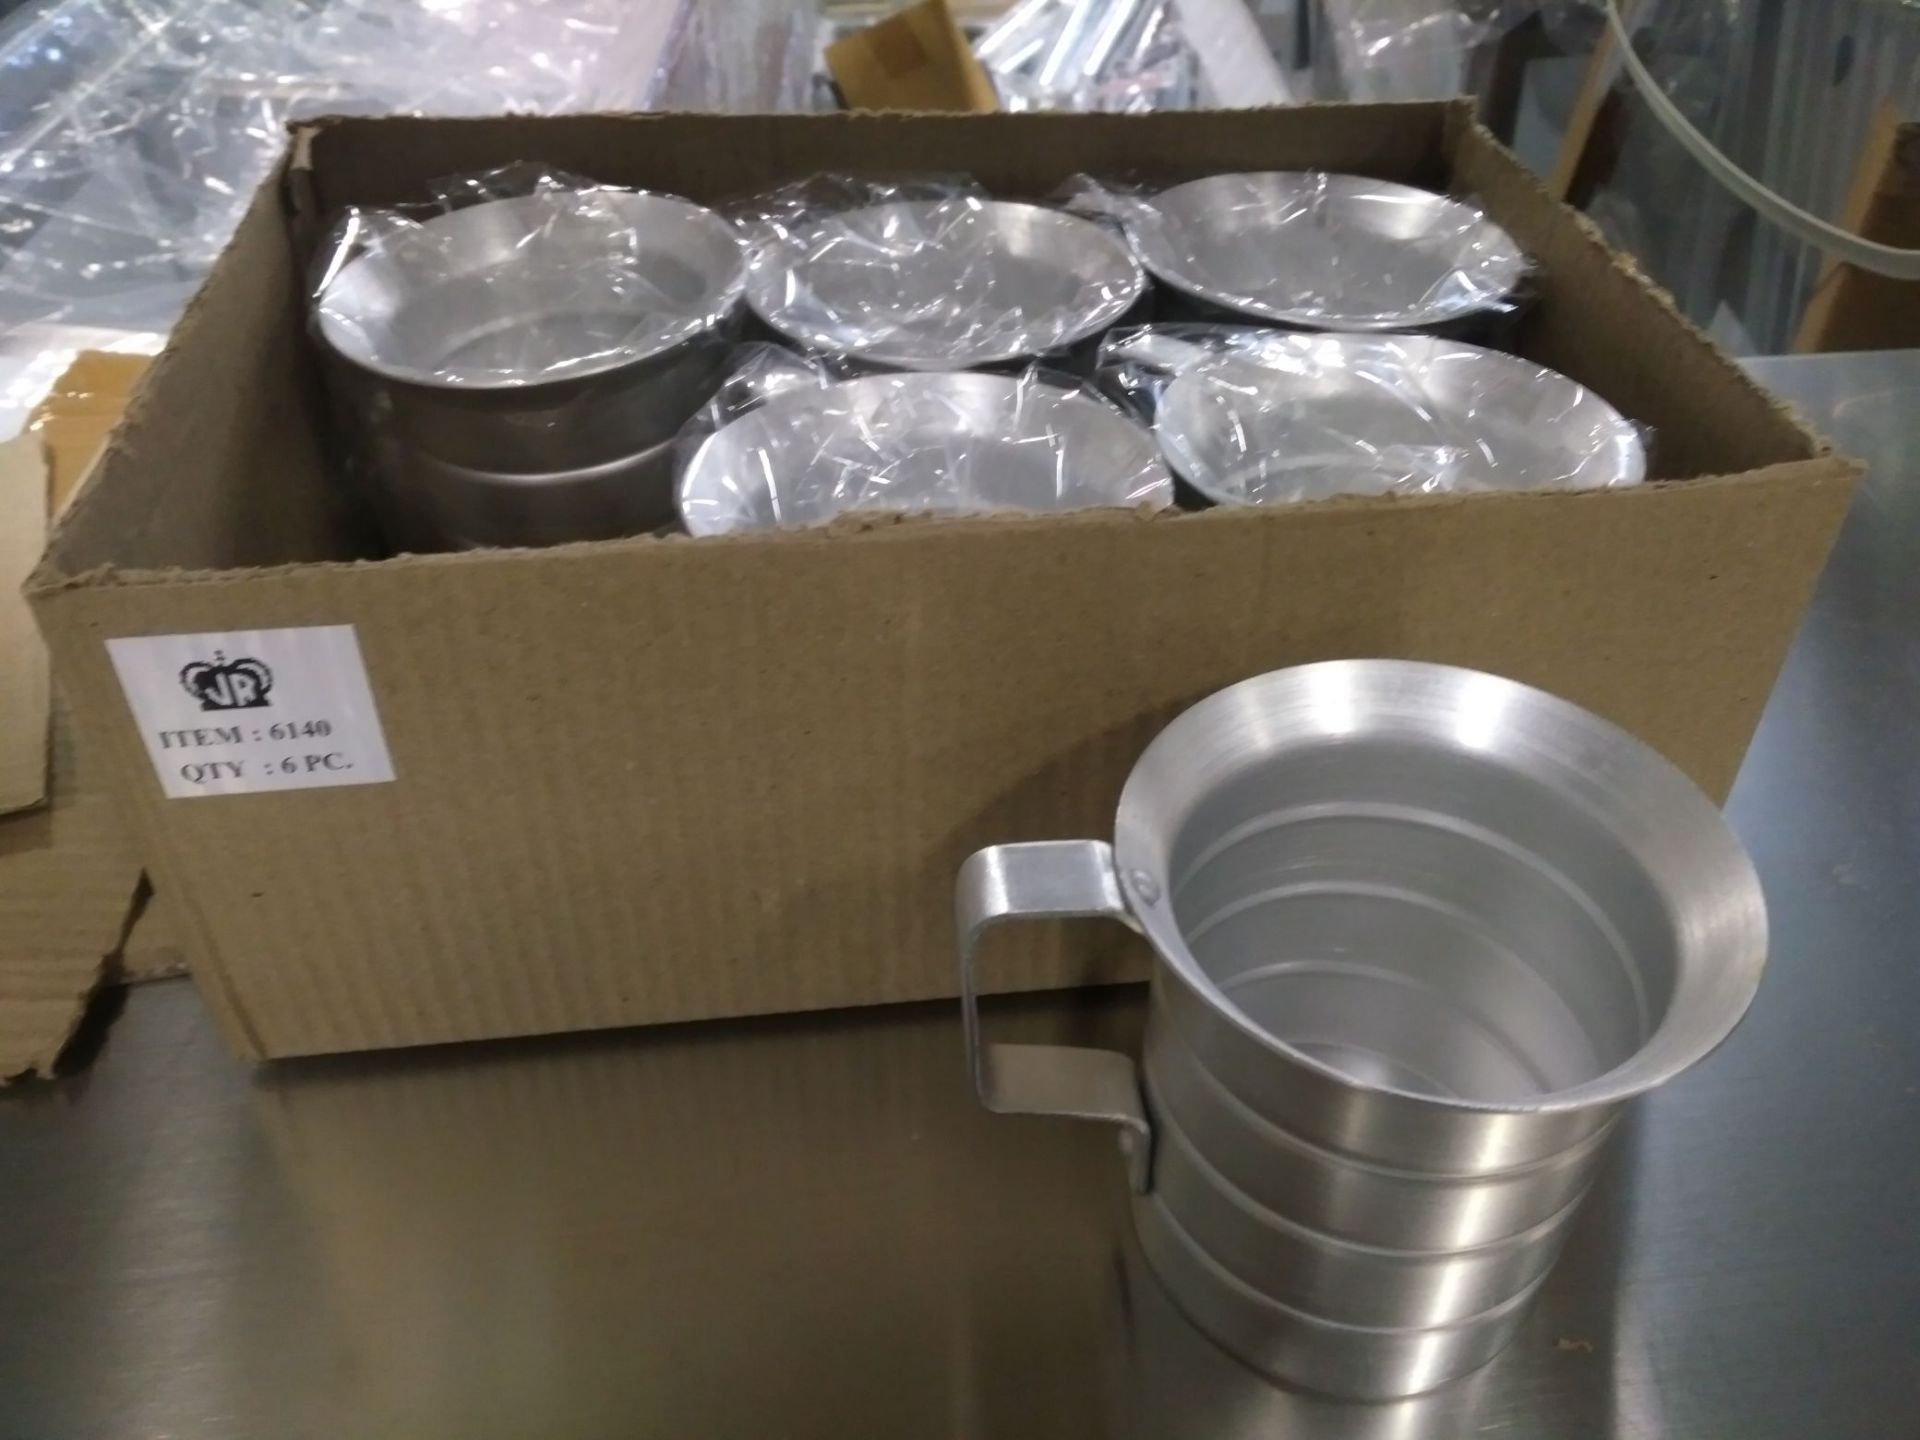 0.5qt Aluminum Bakers Wet Ingredient Measures, JR 6140 - Lot of 6